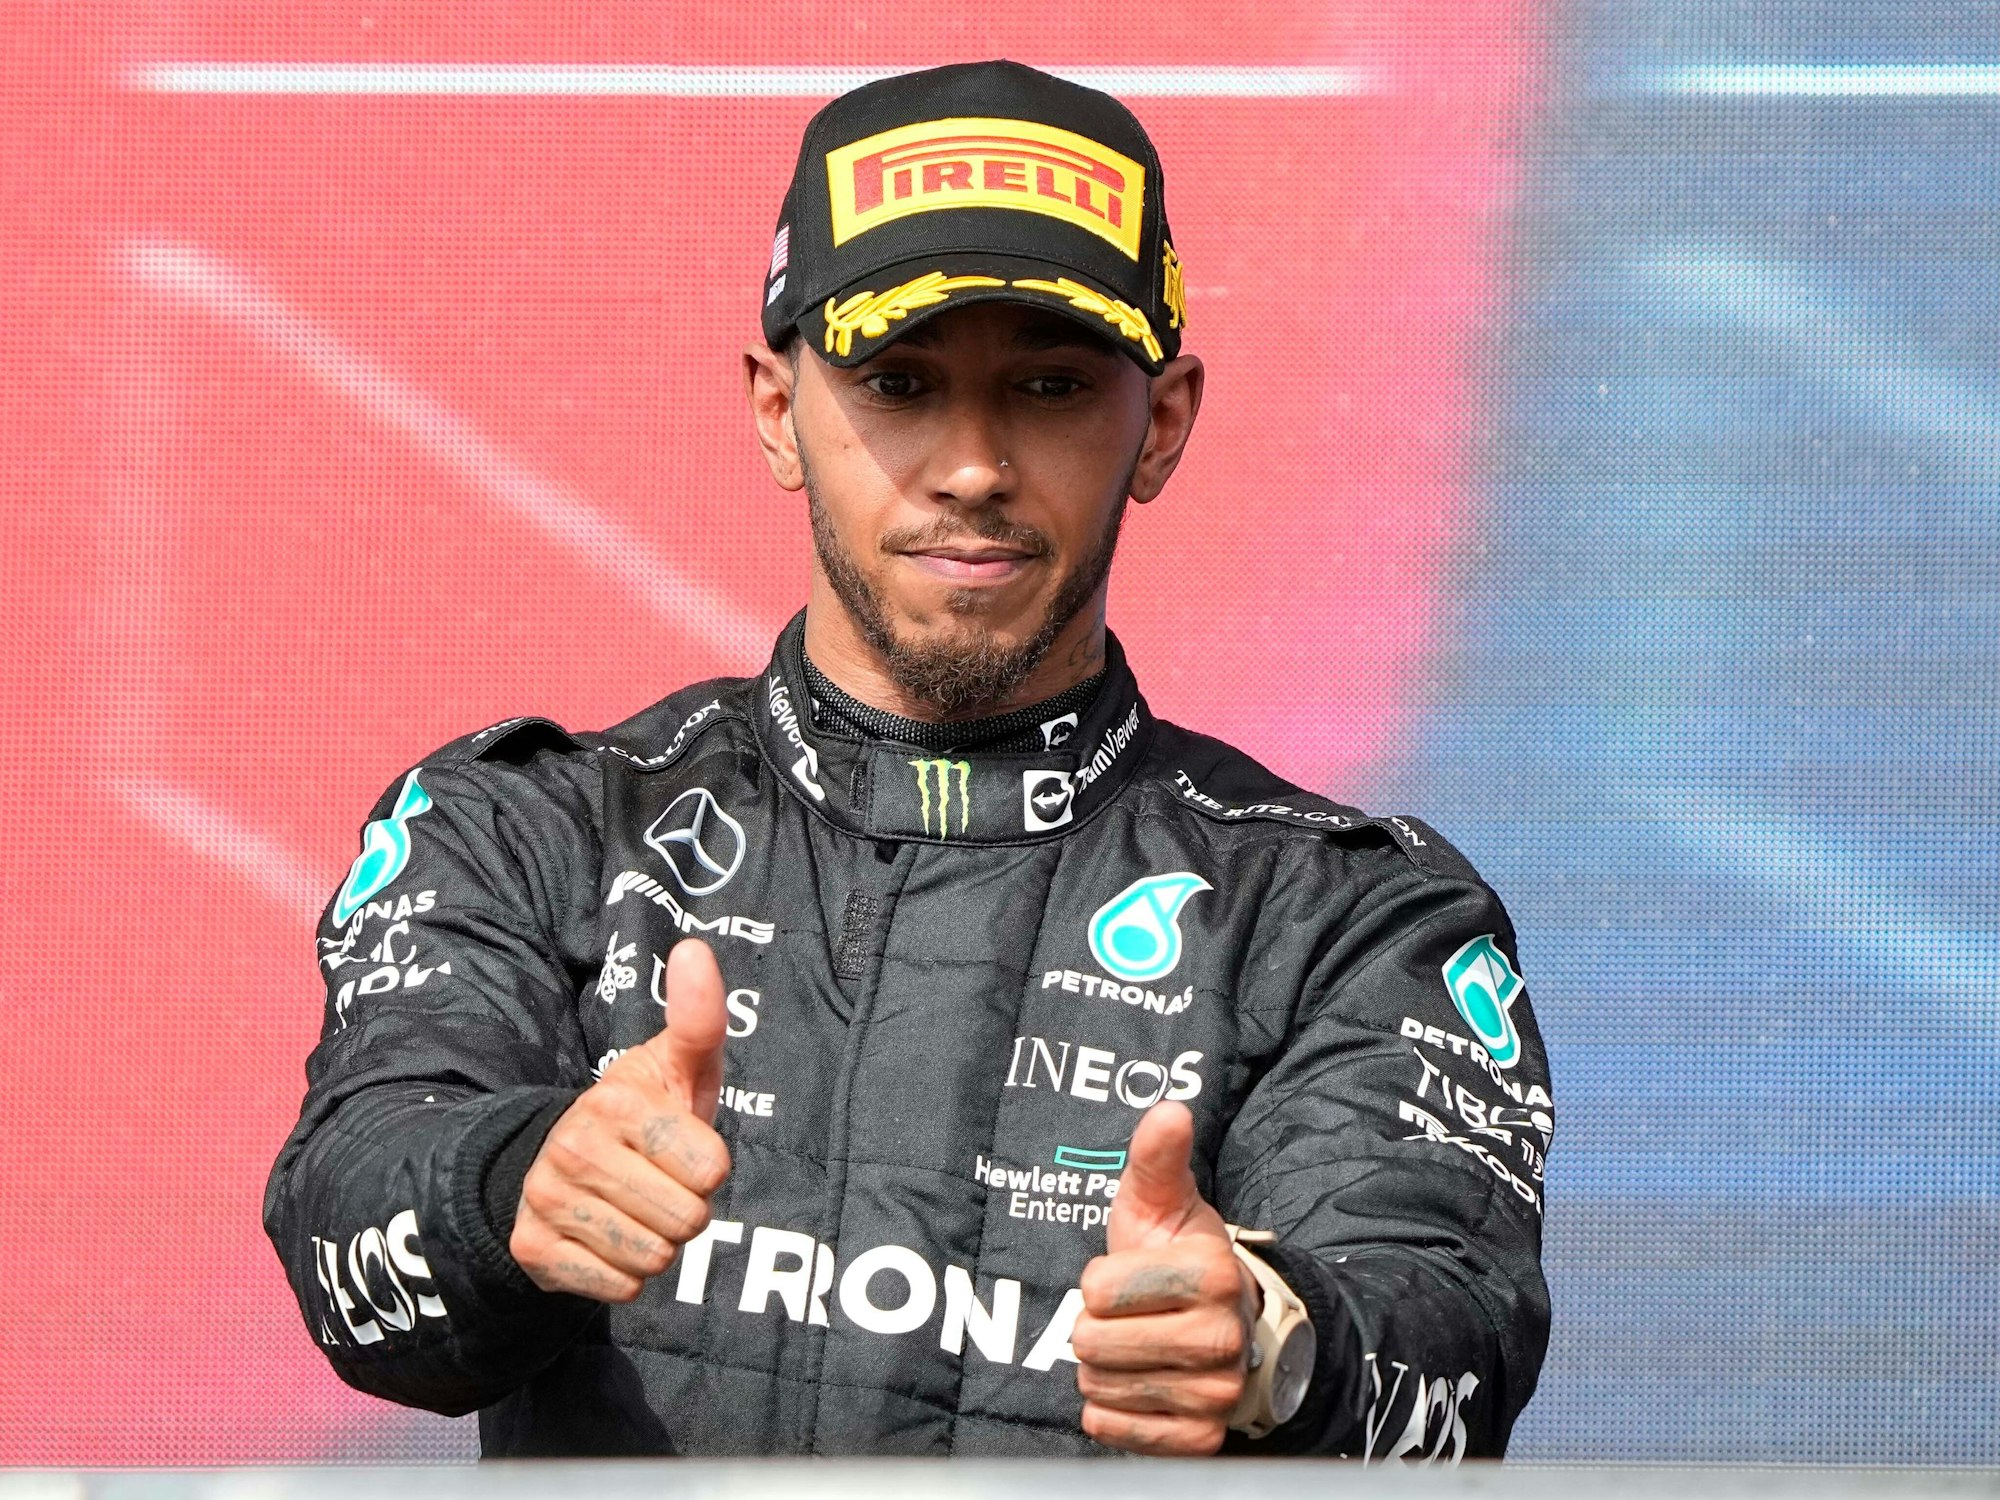 Der britische Mercedes-Pilot Lewis Hamilton, hier im Oktober 2022 inAustin, jubelt nach seinem zweiten Platz bei einem Rennen. Er ernährt sich bereits seit Jahren vegan.